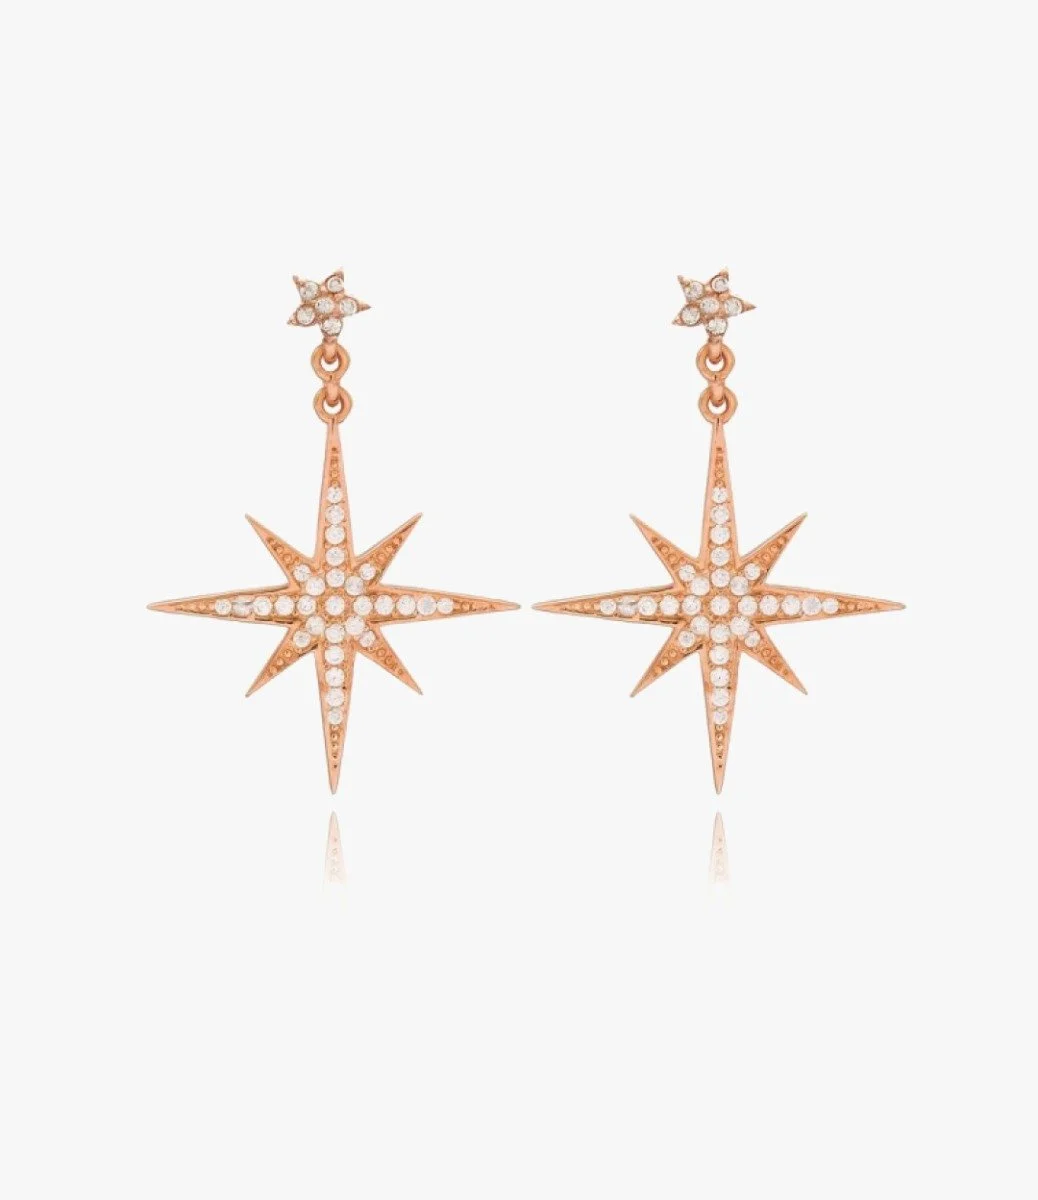 Hexagonal Pattern Earrings With Genuine Zircon